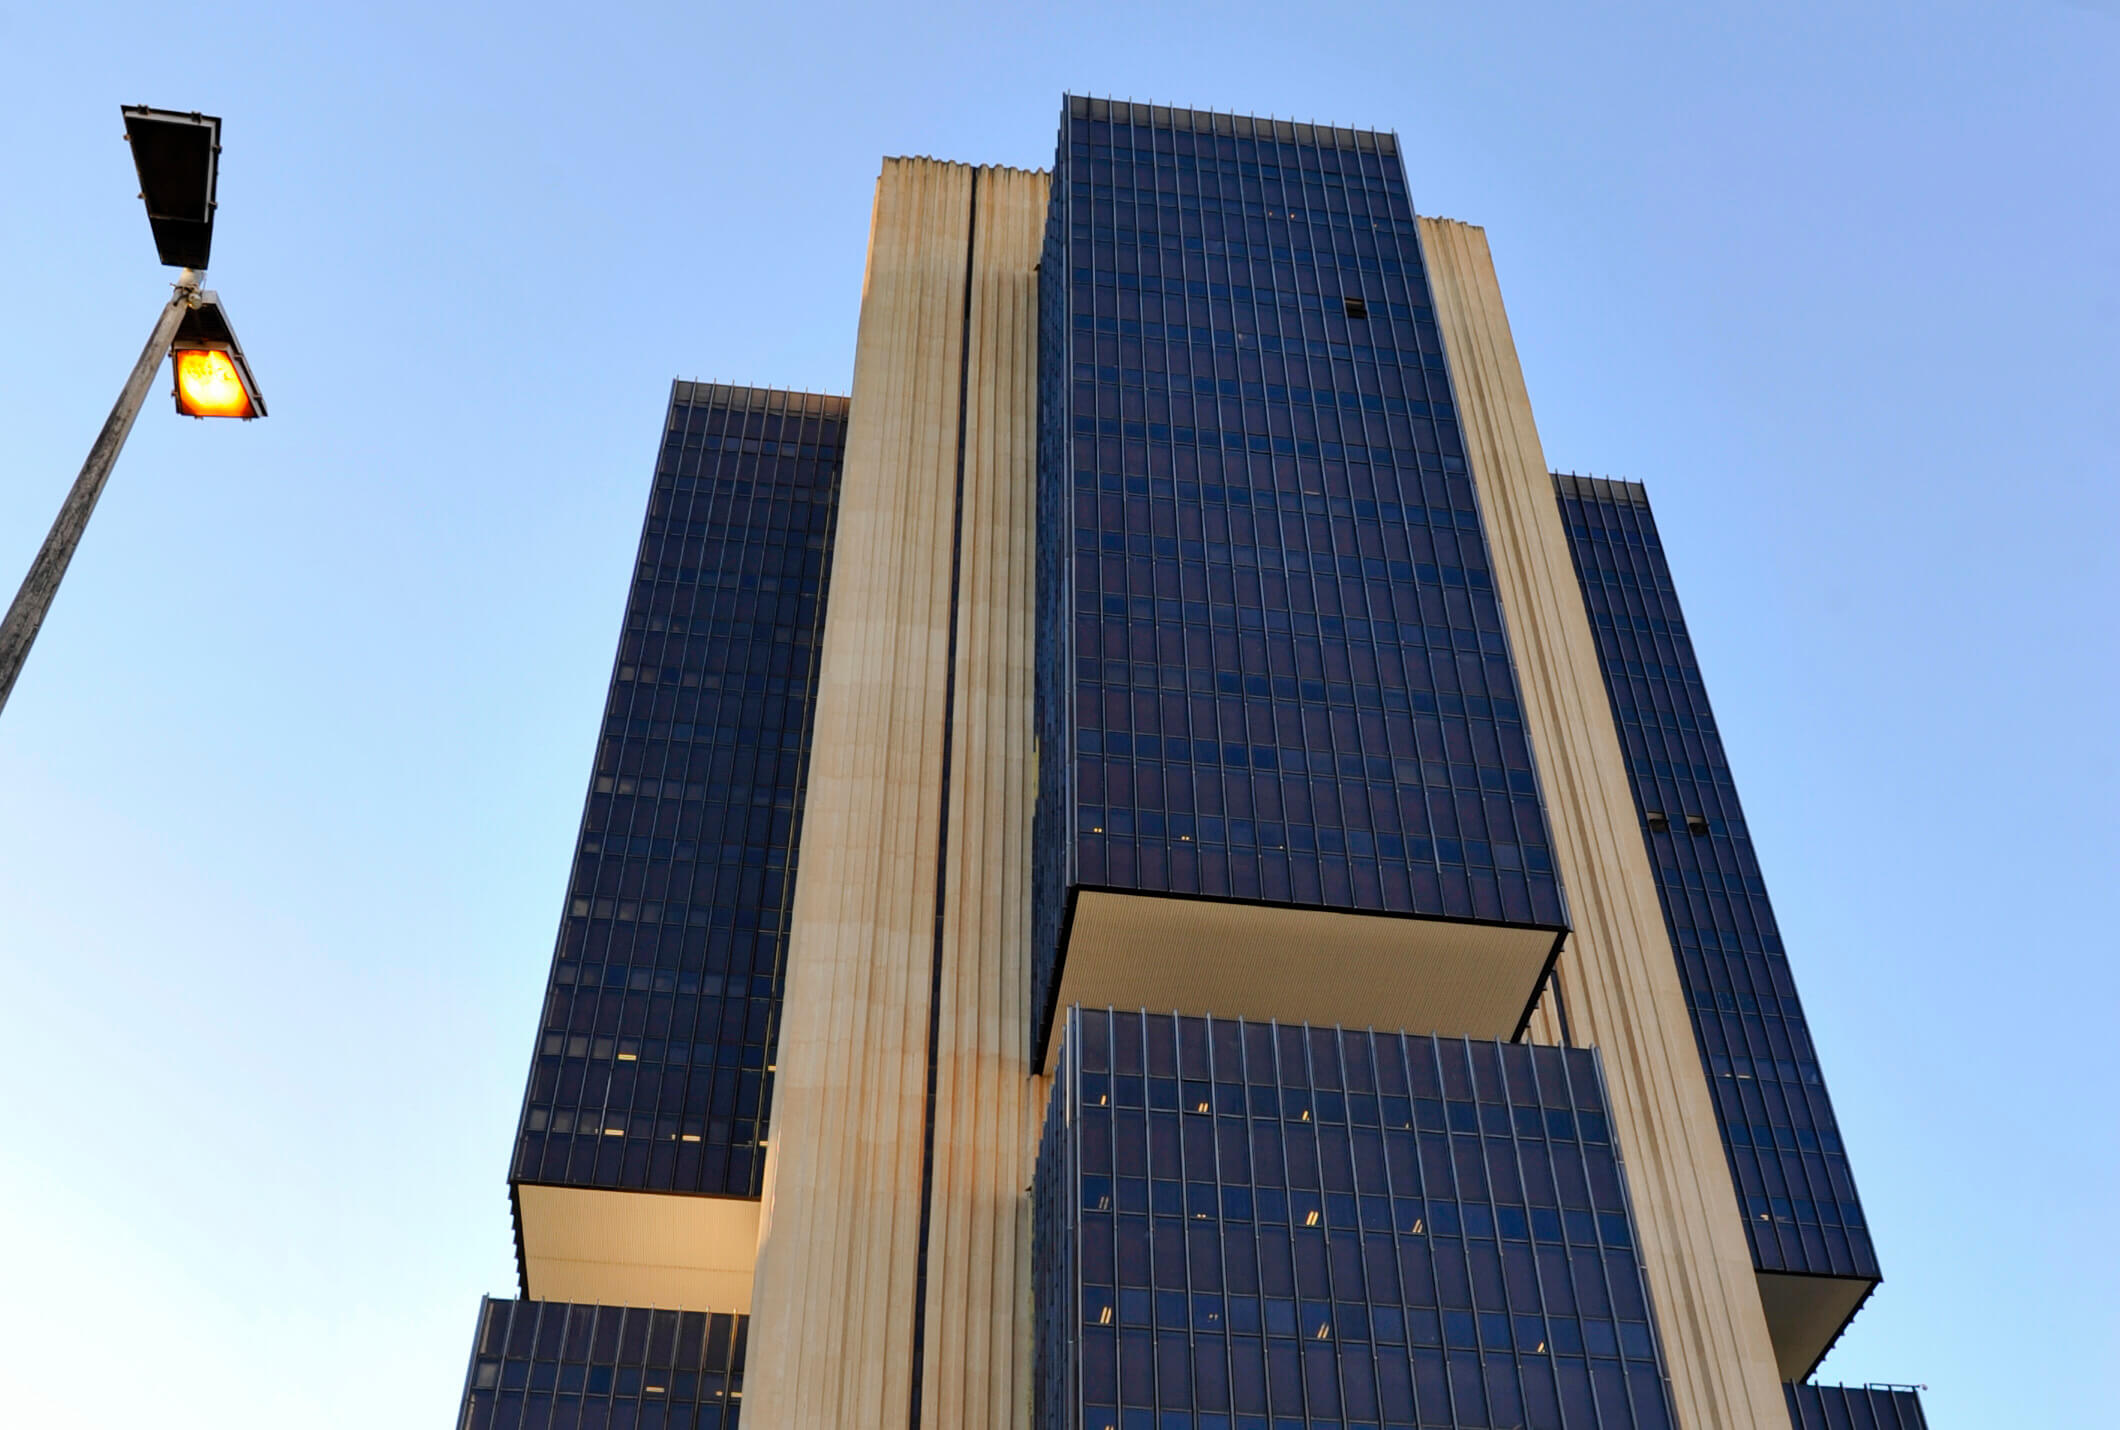 Edificio_Banco_Central_do_Brasil.jpg